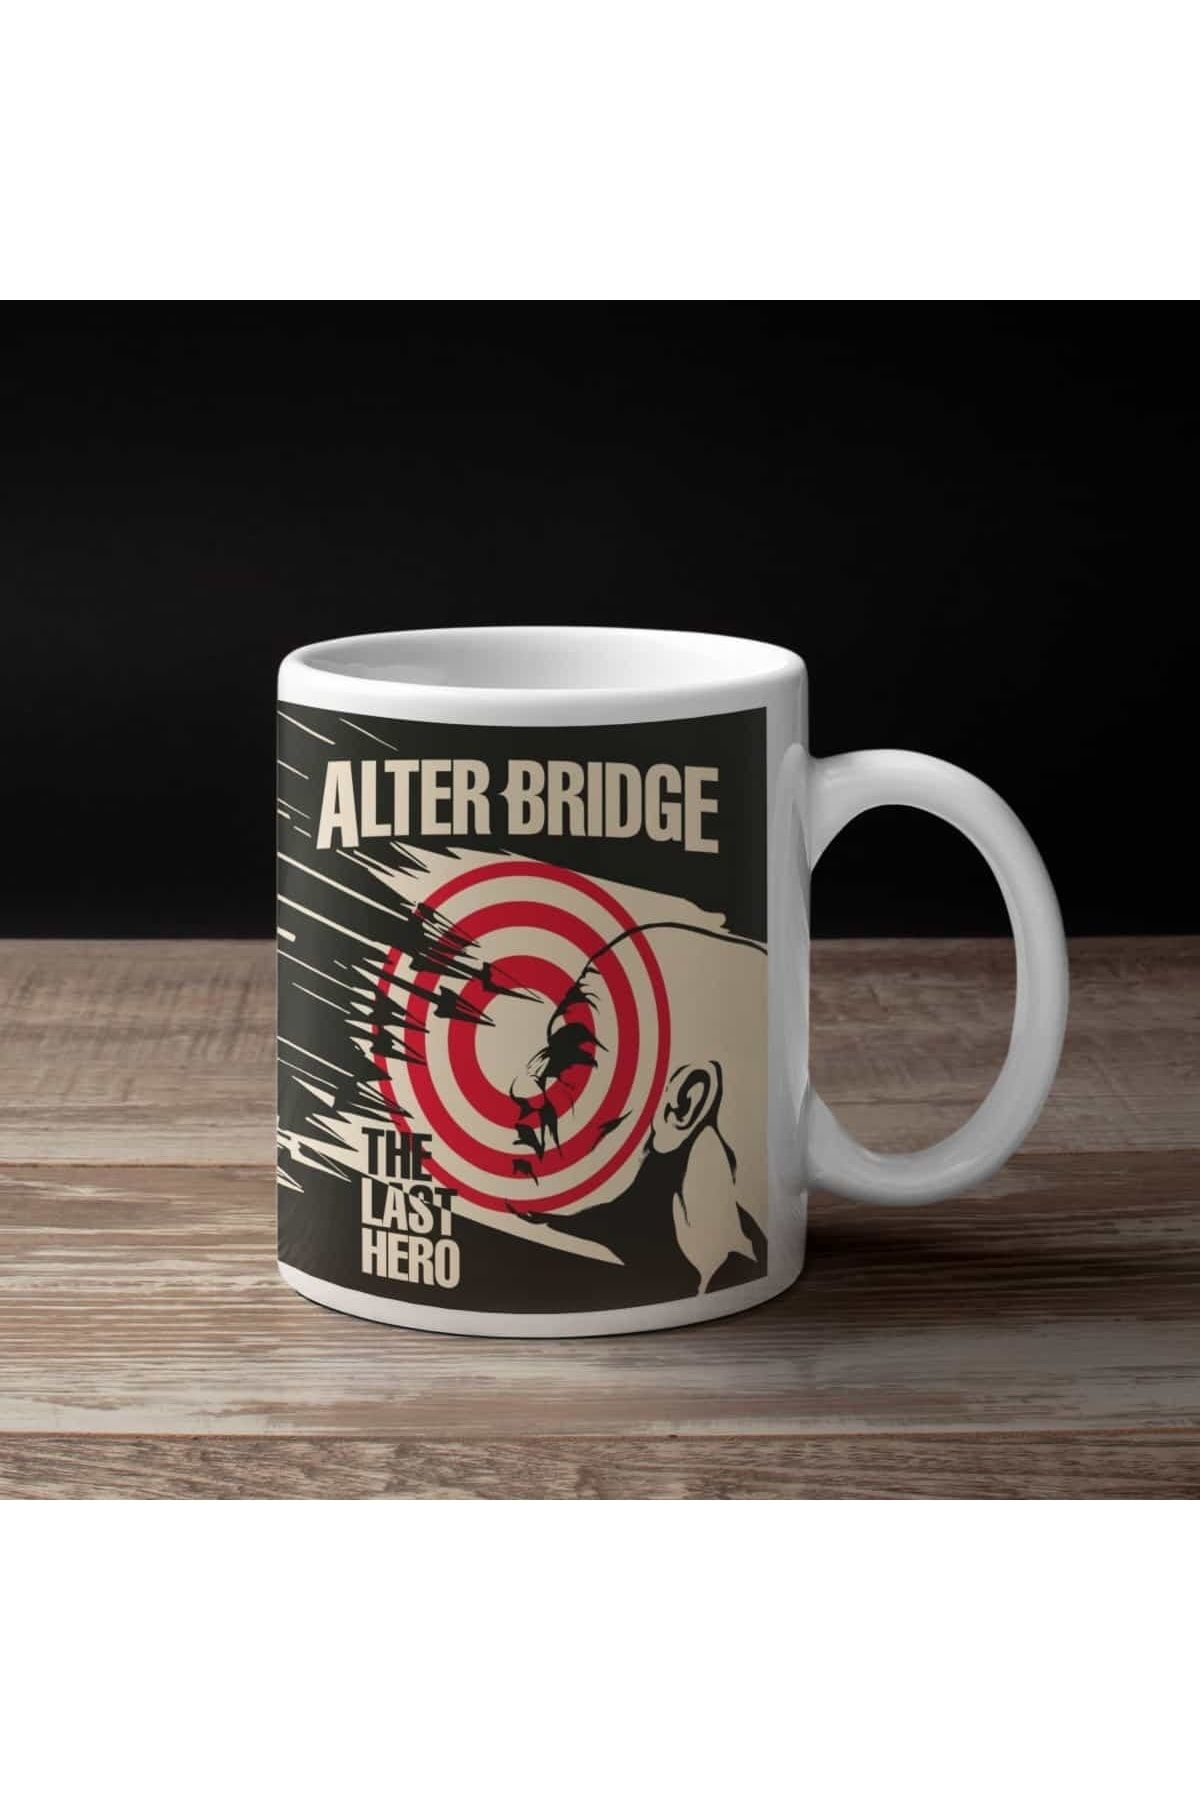 Mugs Heaven Alter Bridge Kahve Kupası, Alter Bridge The Last Hero Baskılı Kupa